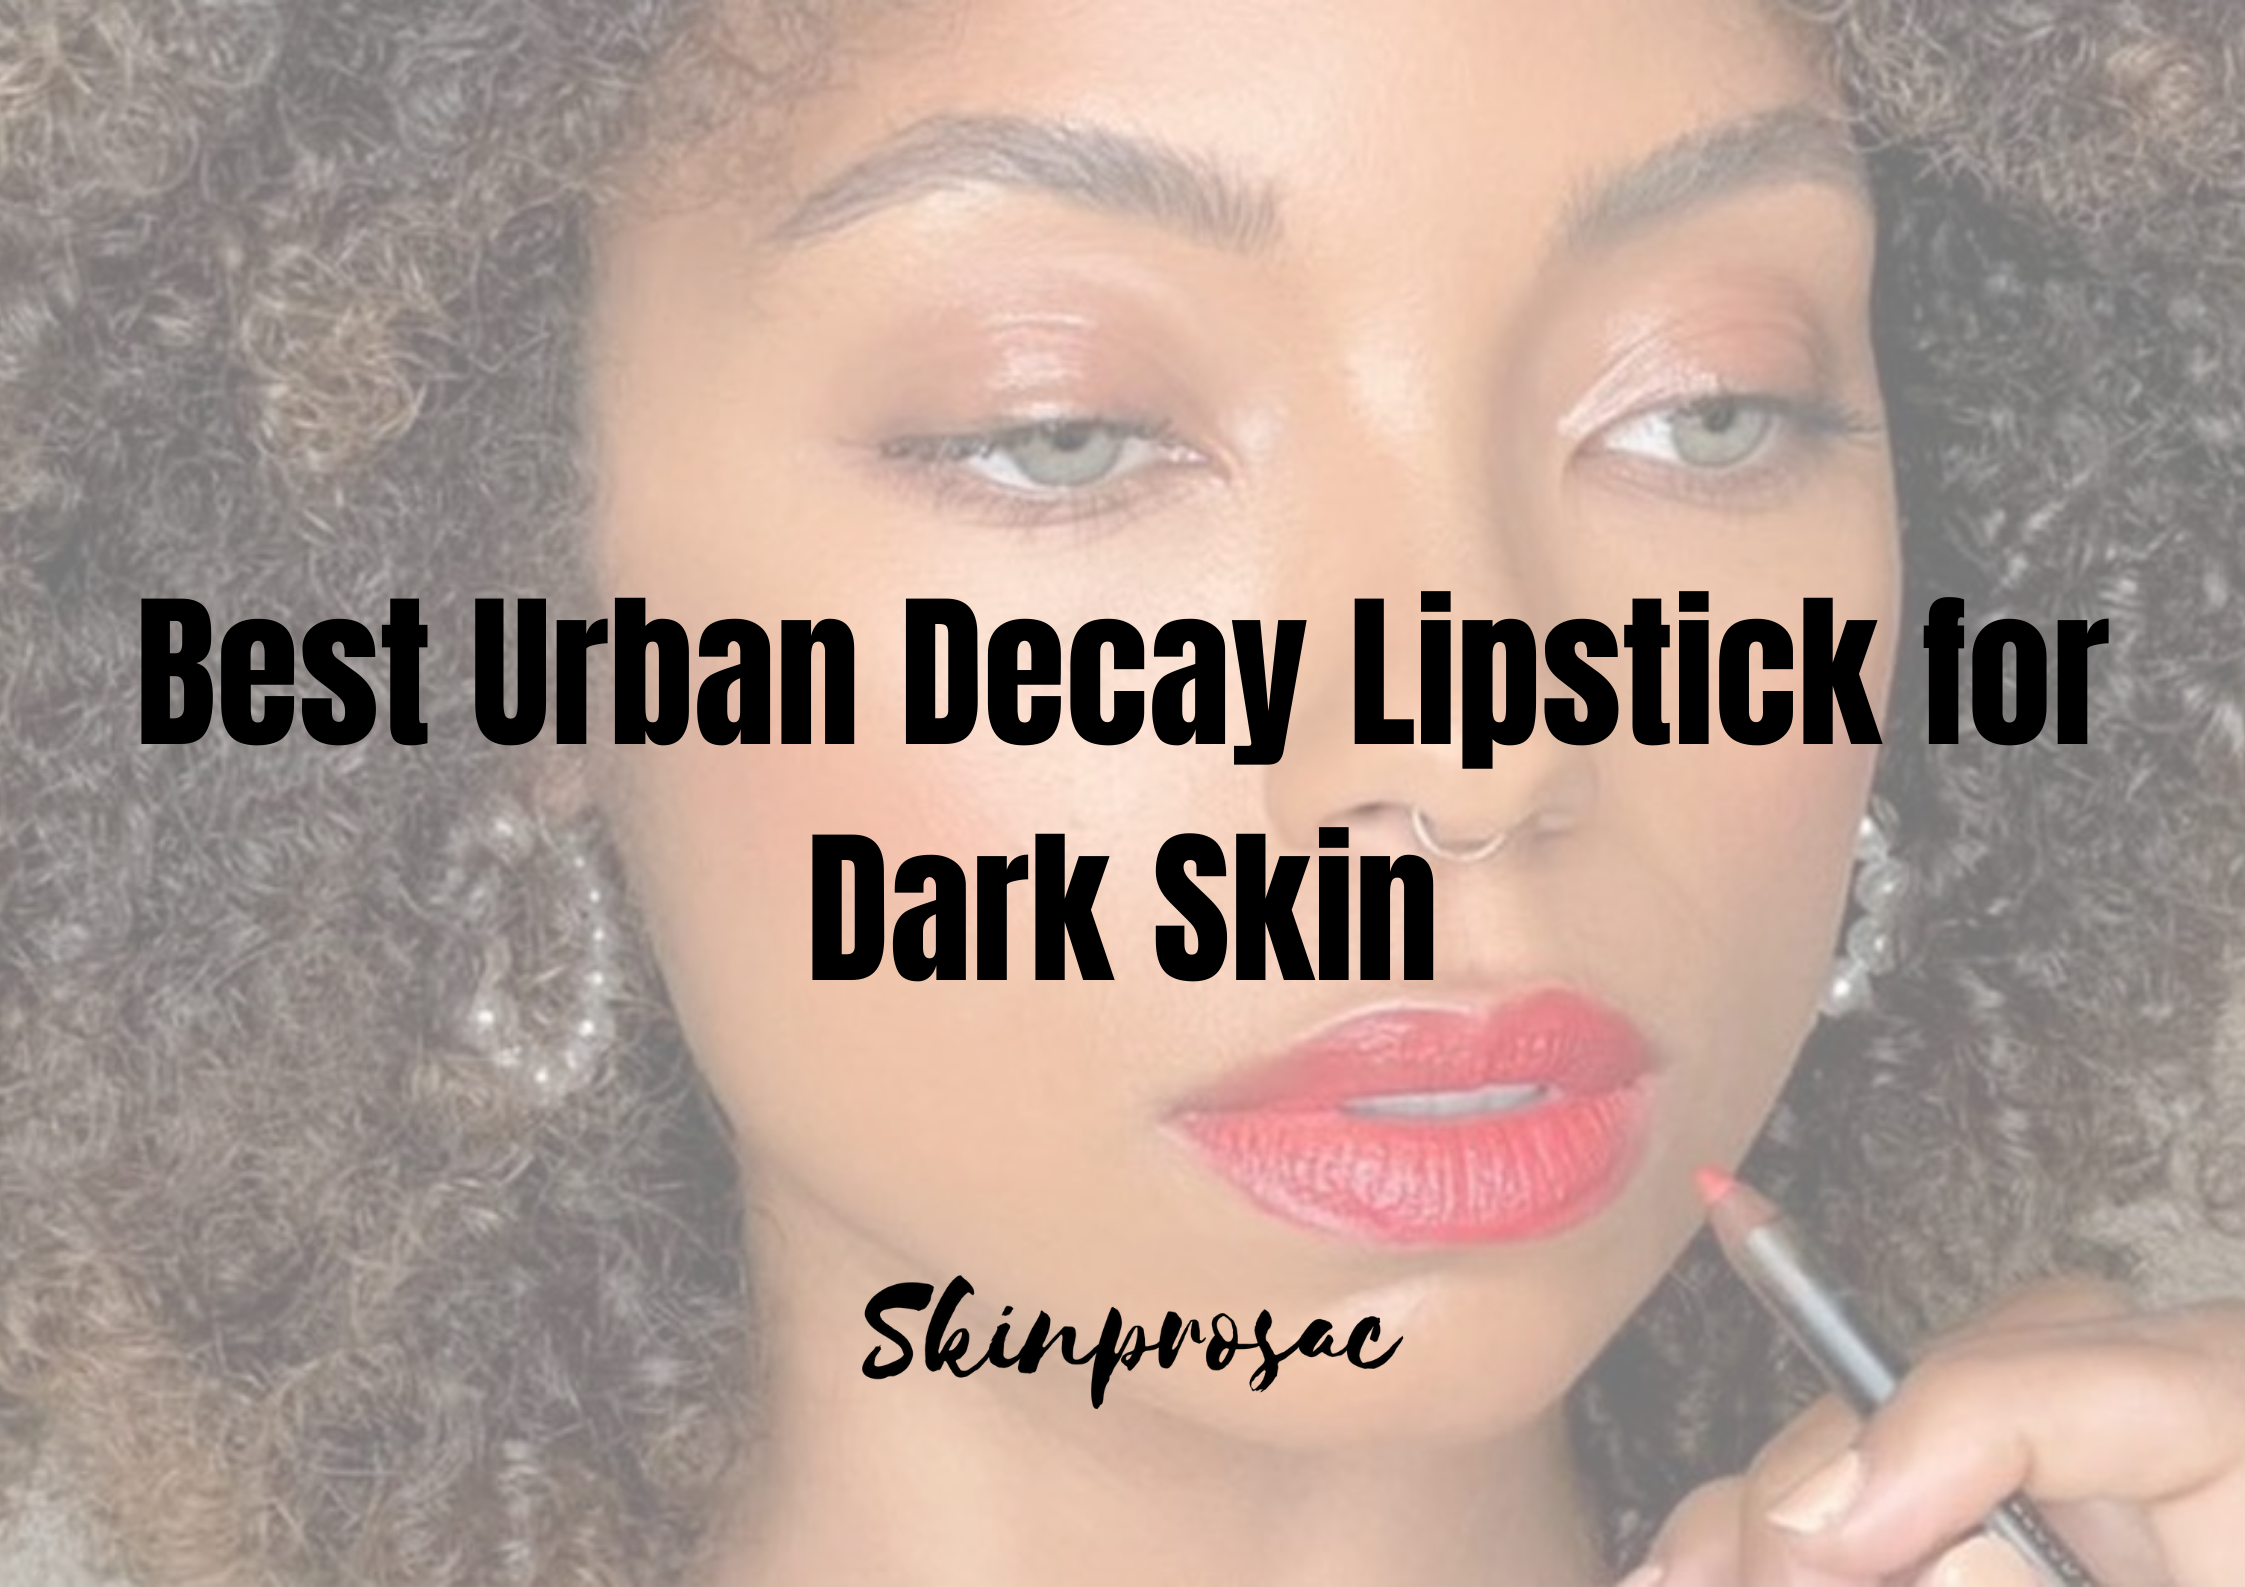 Best Urban Decay Lipstick for Dark Skin